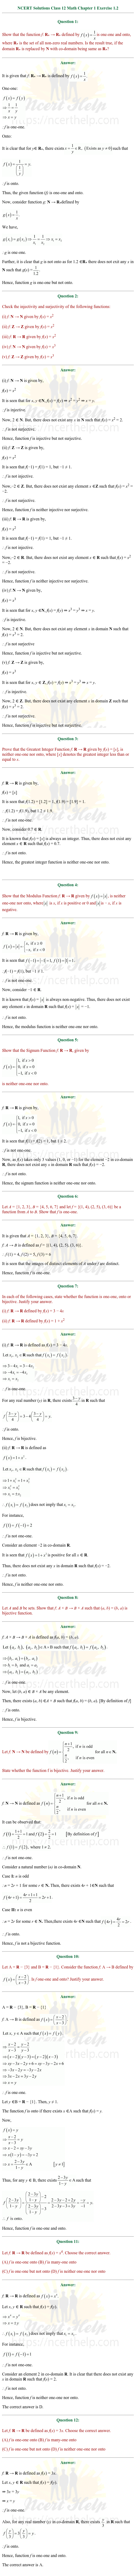 ex.1.2 Class 12 Math Chapter 1 ncert solutions